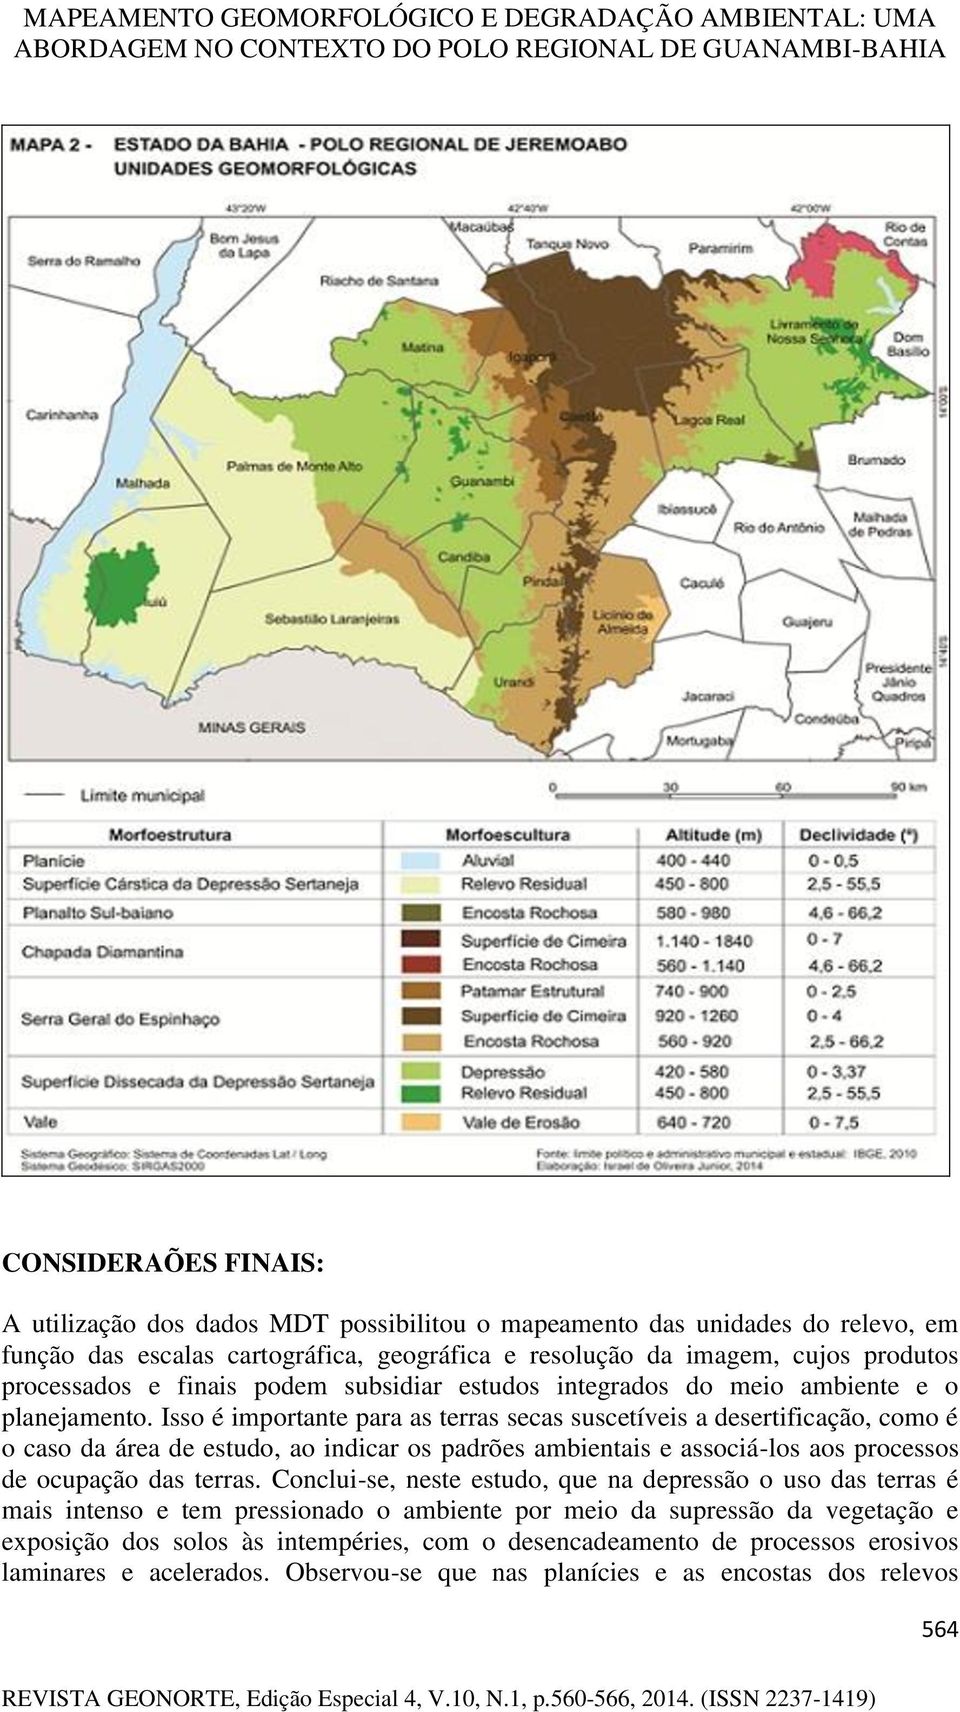 Isso é importante para as terras secas suscetíveis a desertificação, como é o caso da área de estudo, ao indicar os padrões ambientais e associá-los aos processos de ocupação das terras.